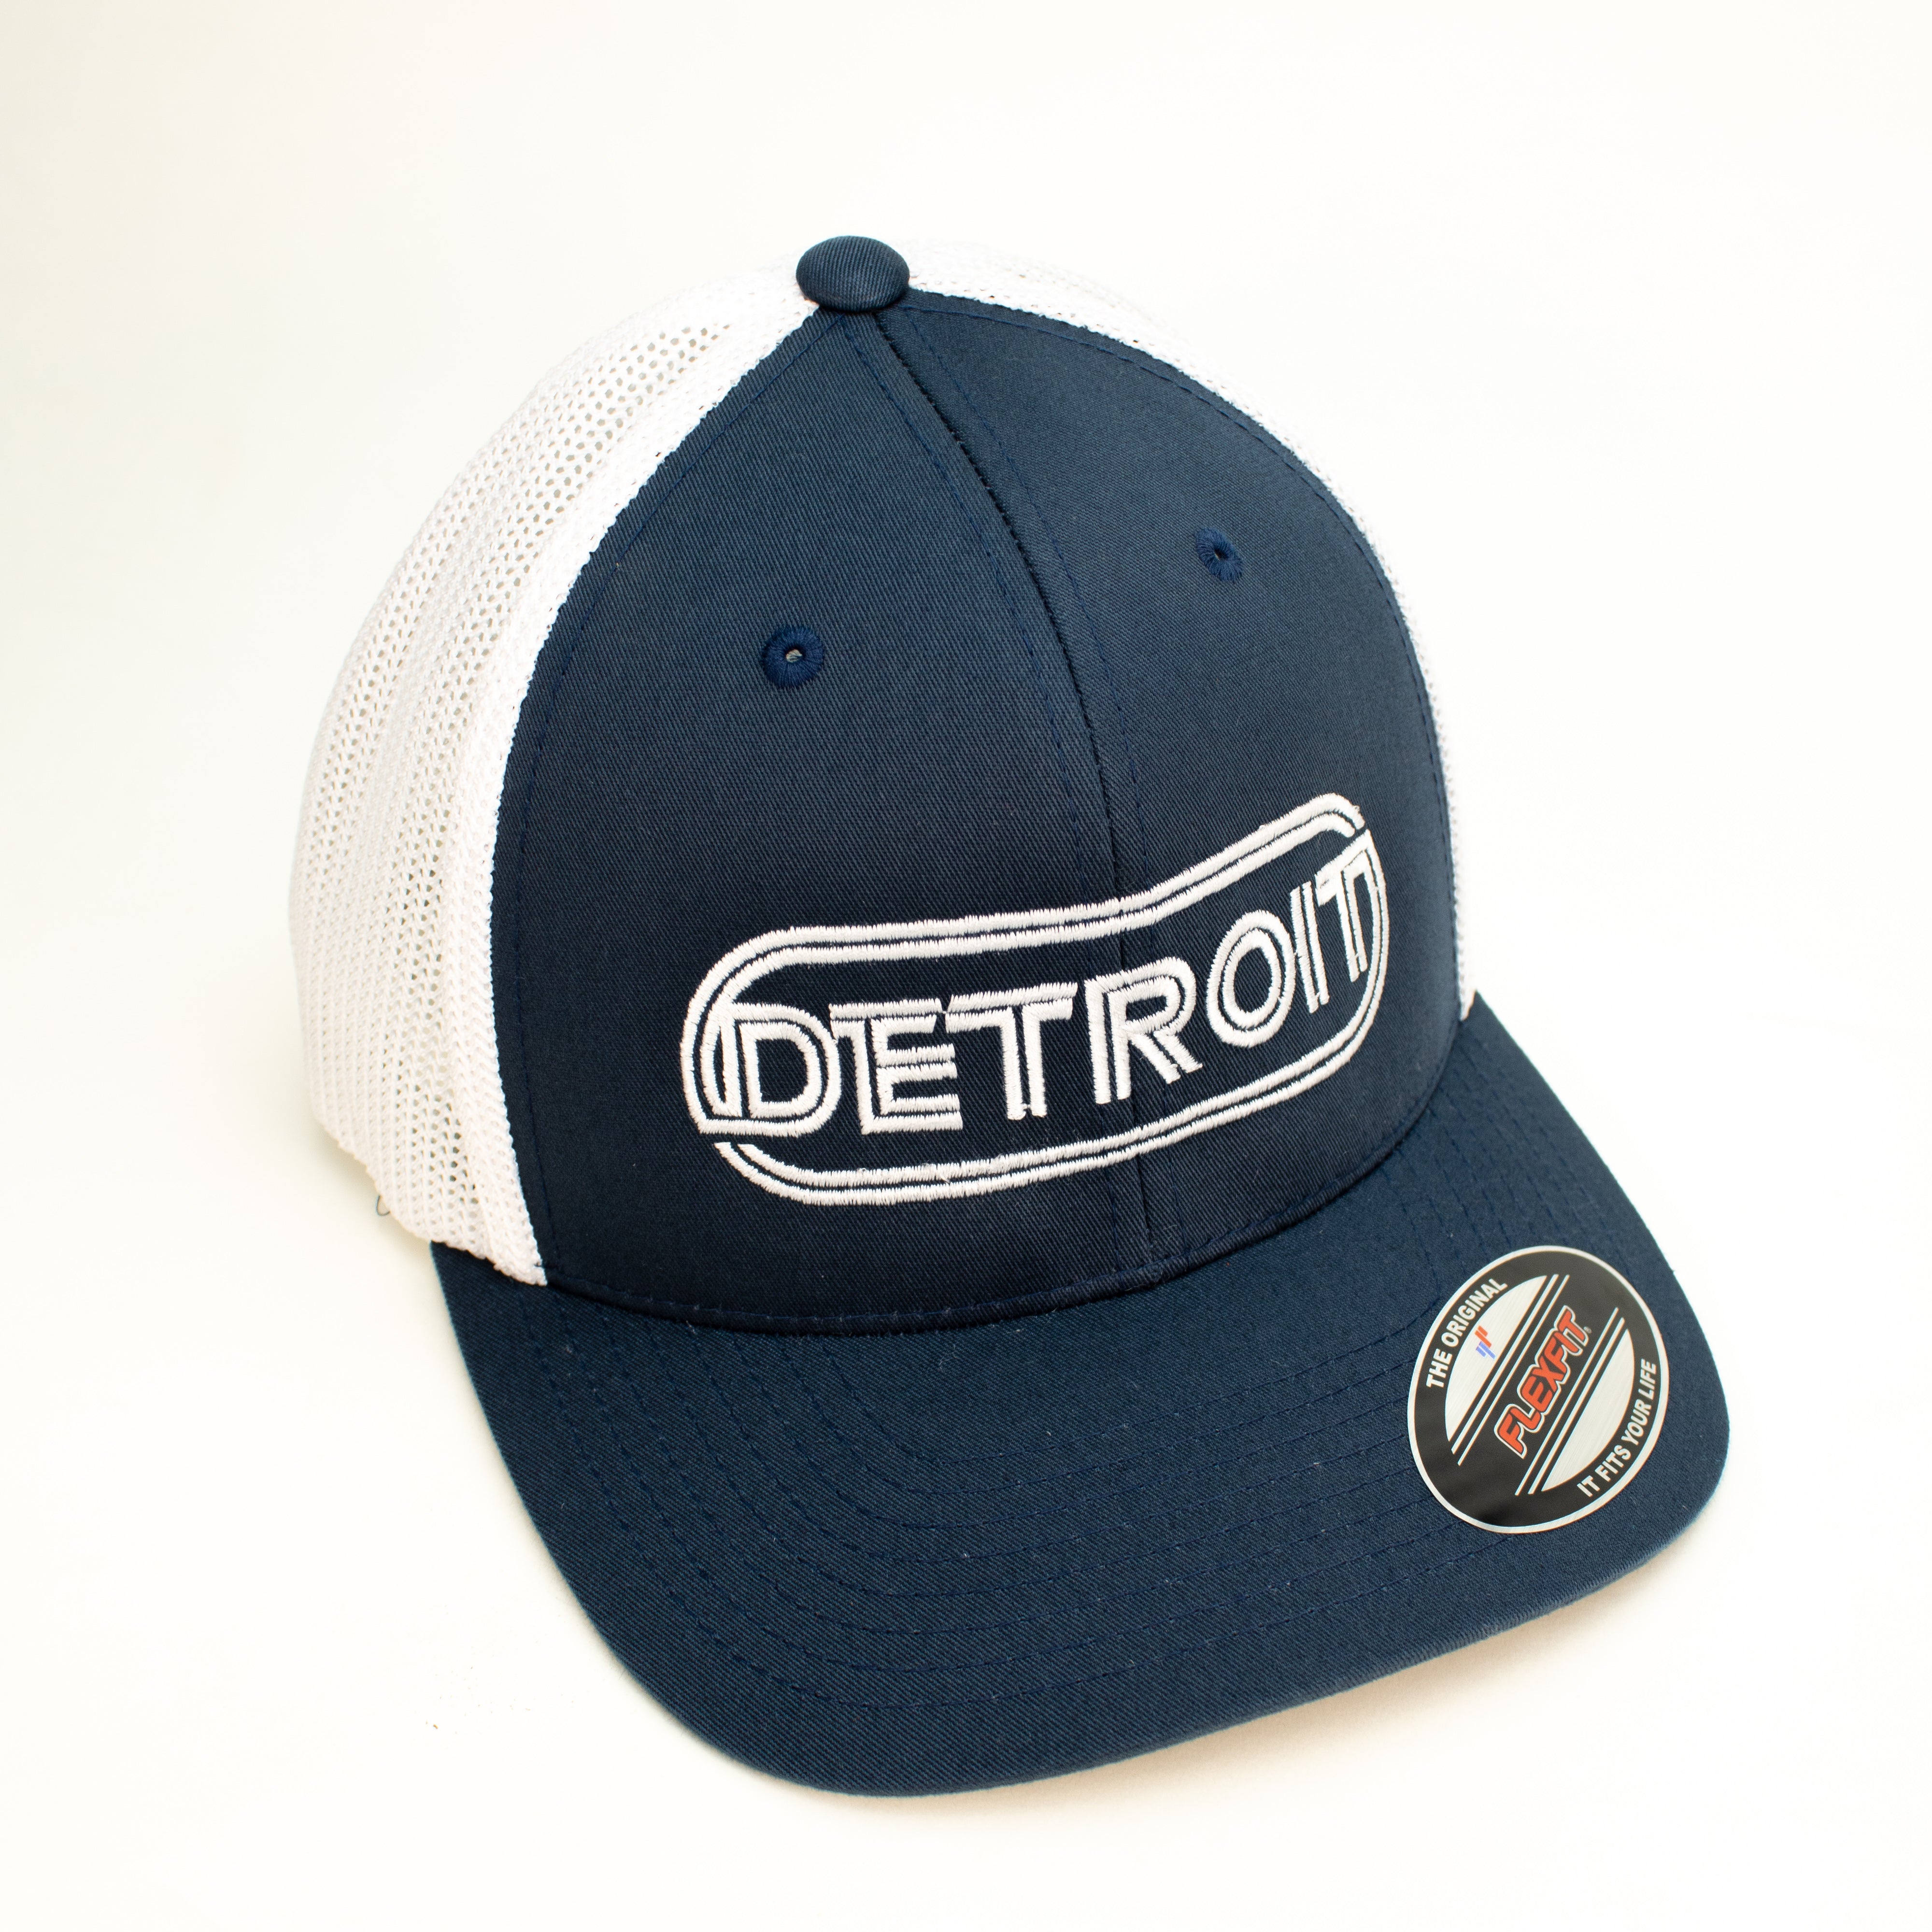 Hat - Detroit Wrap Flexfit (Navy/White) — Detroit Shirt Company